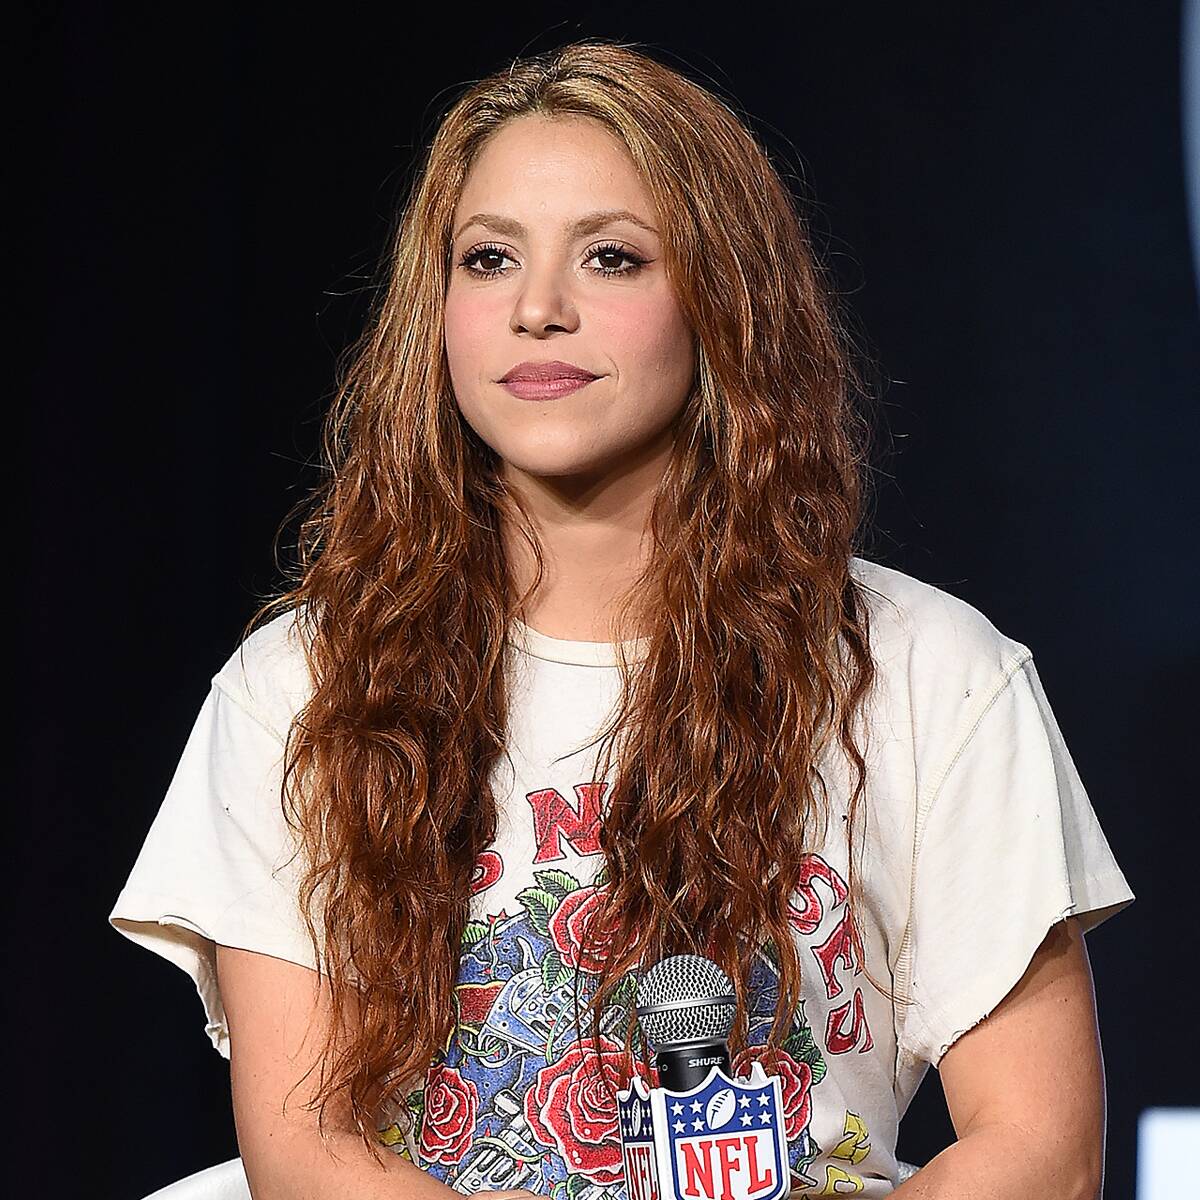 Shakira Debuts Hot Pink Hair Transformation: "Surprise!"